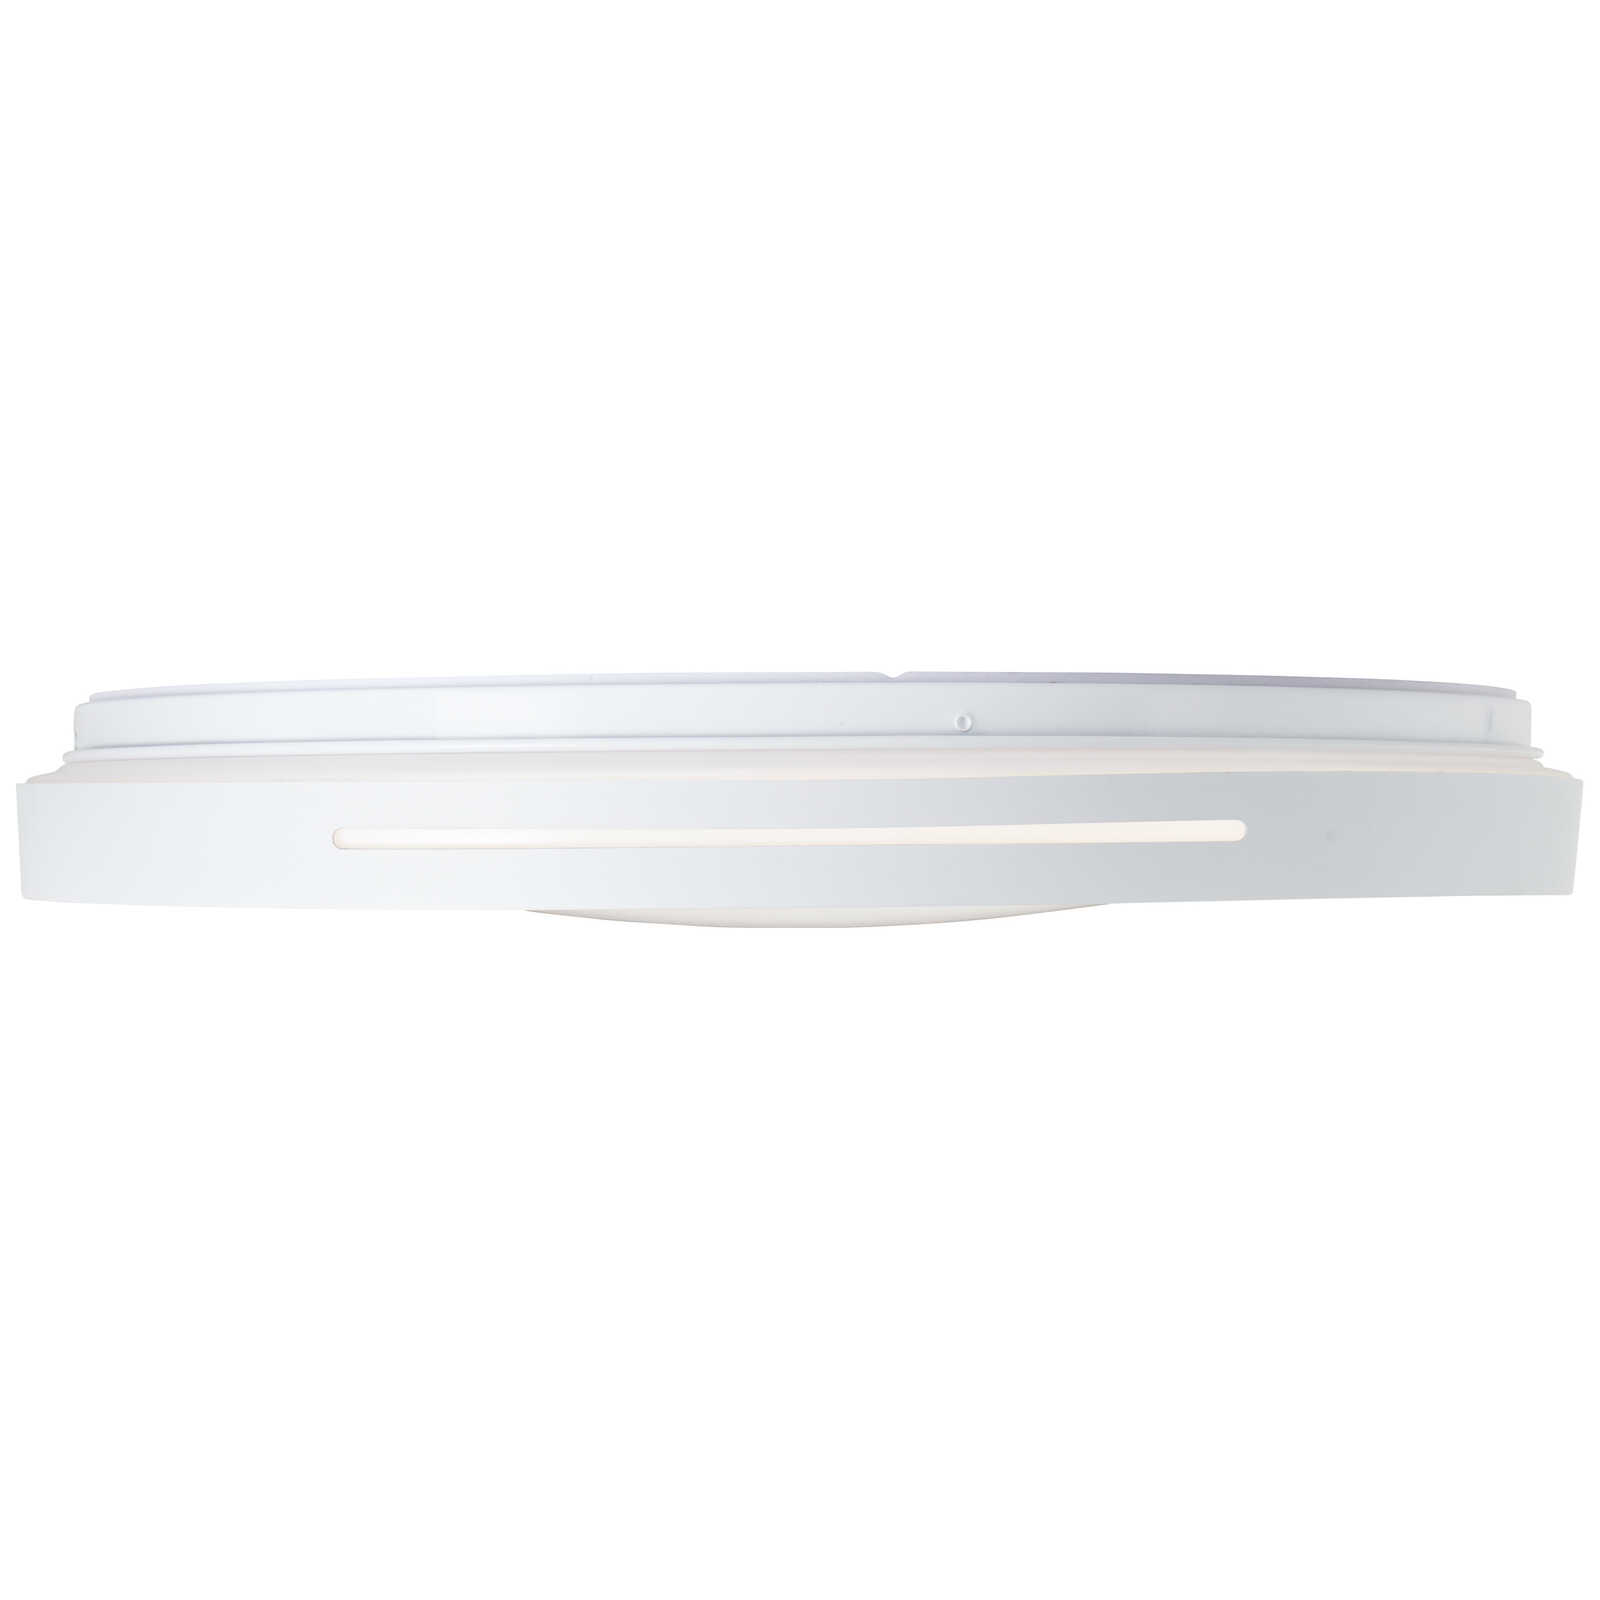             Lampada da parete e soffitto in plastica - Aurora 2 - Metallizzata
        